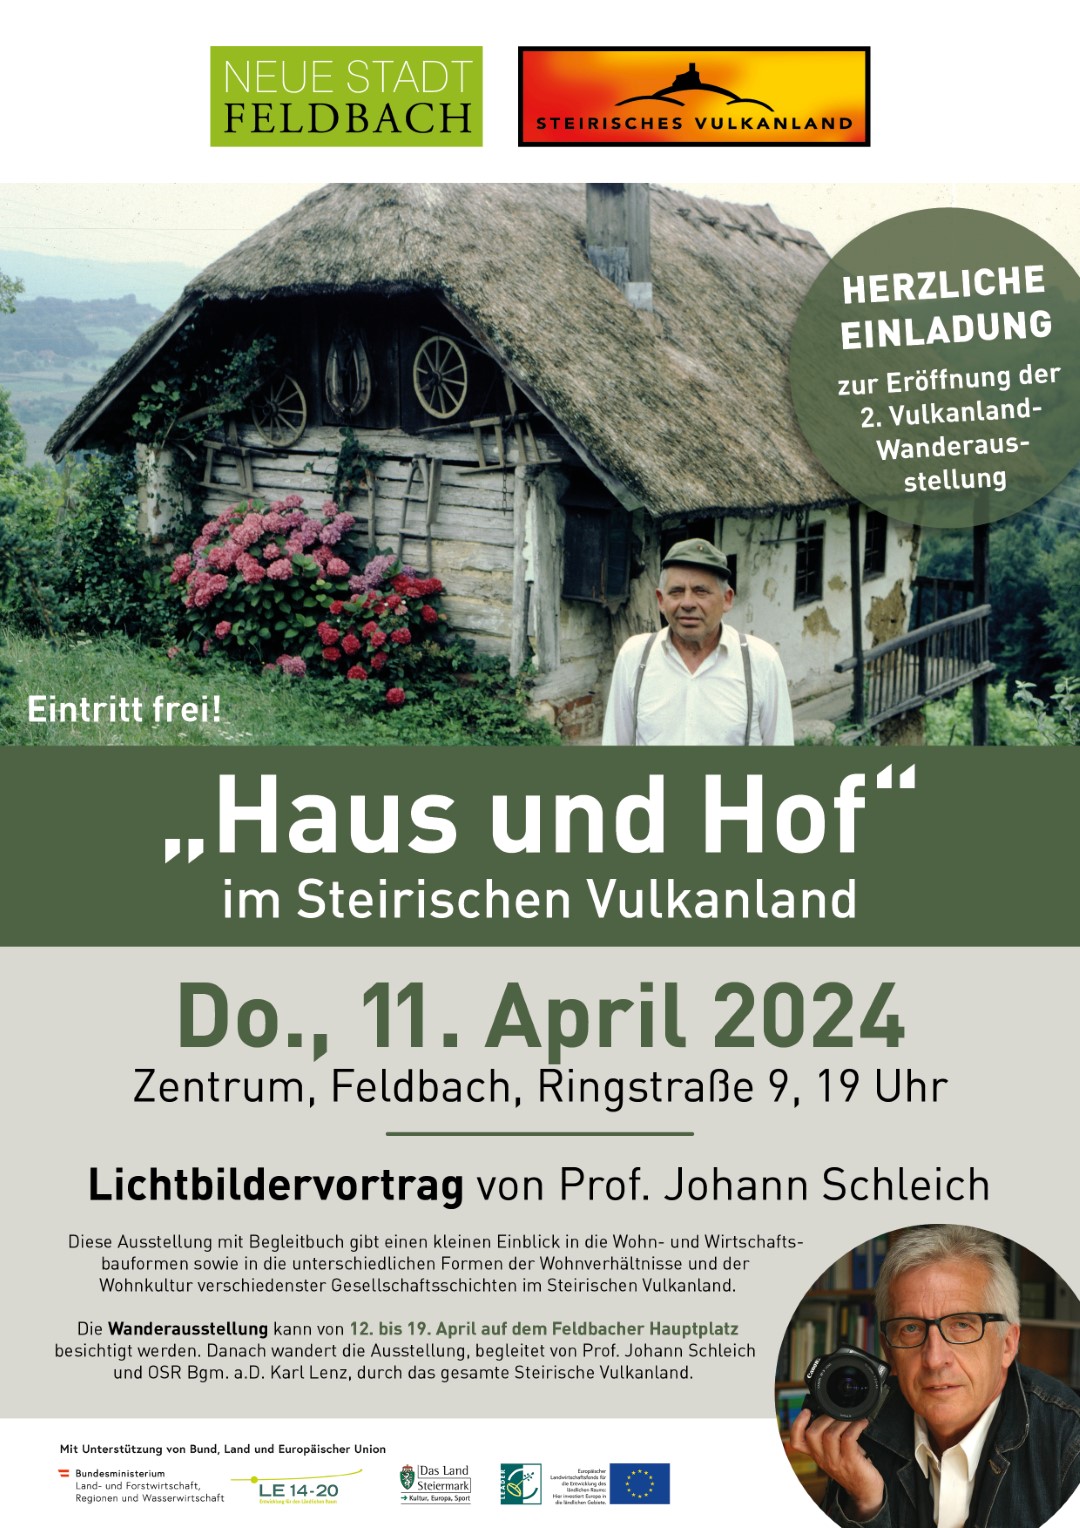 Ausstellung "Haus und Hof im Steirischen Vulkanland", Do., 11. April, 19 Uhr